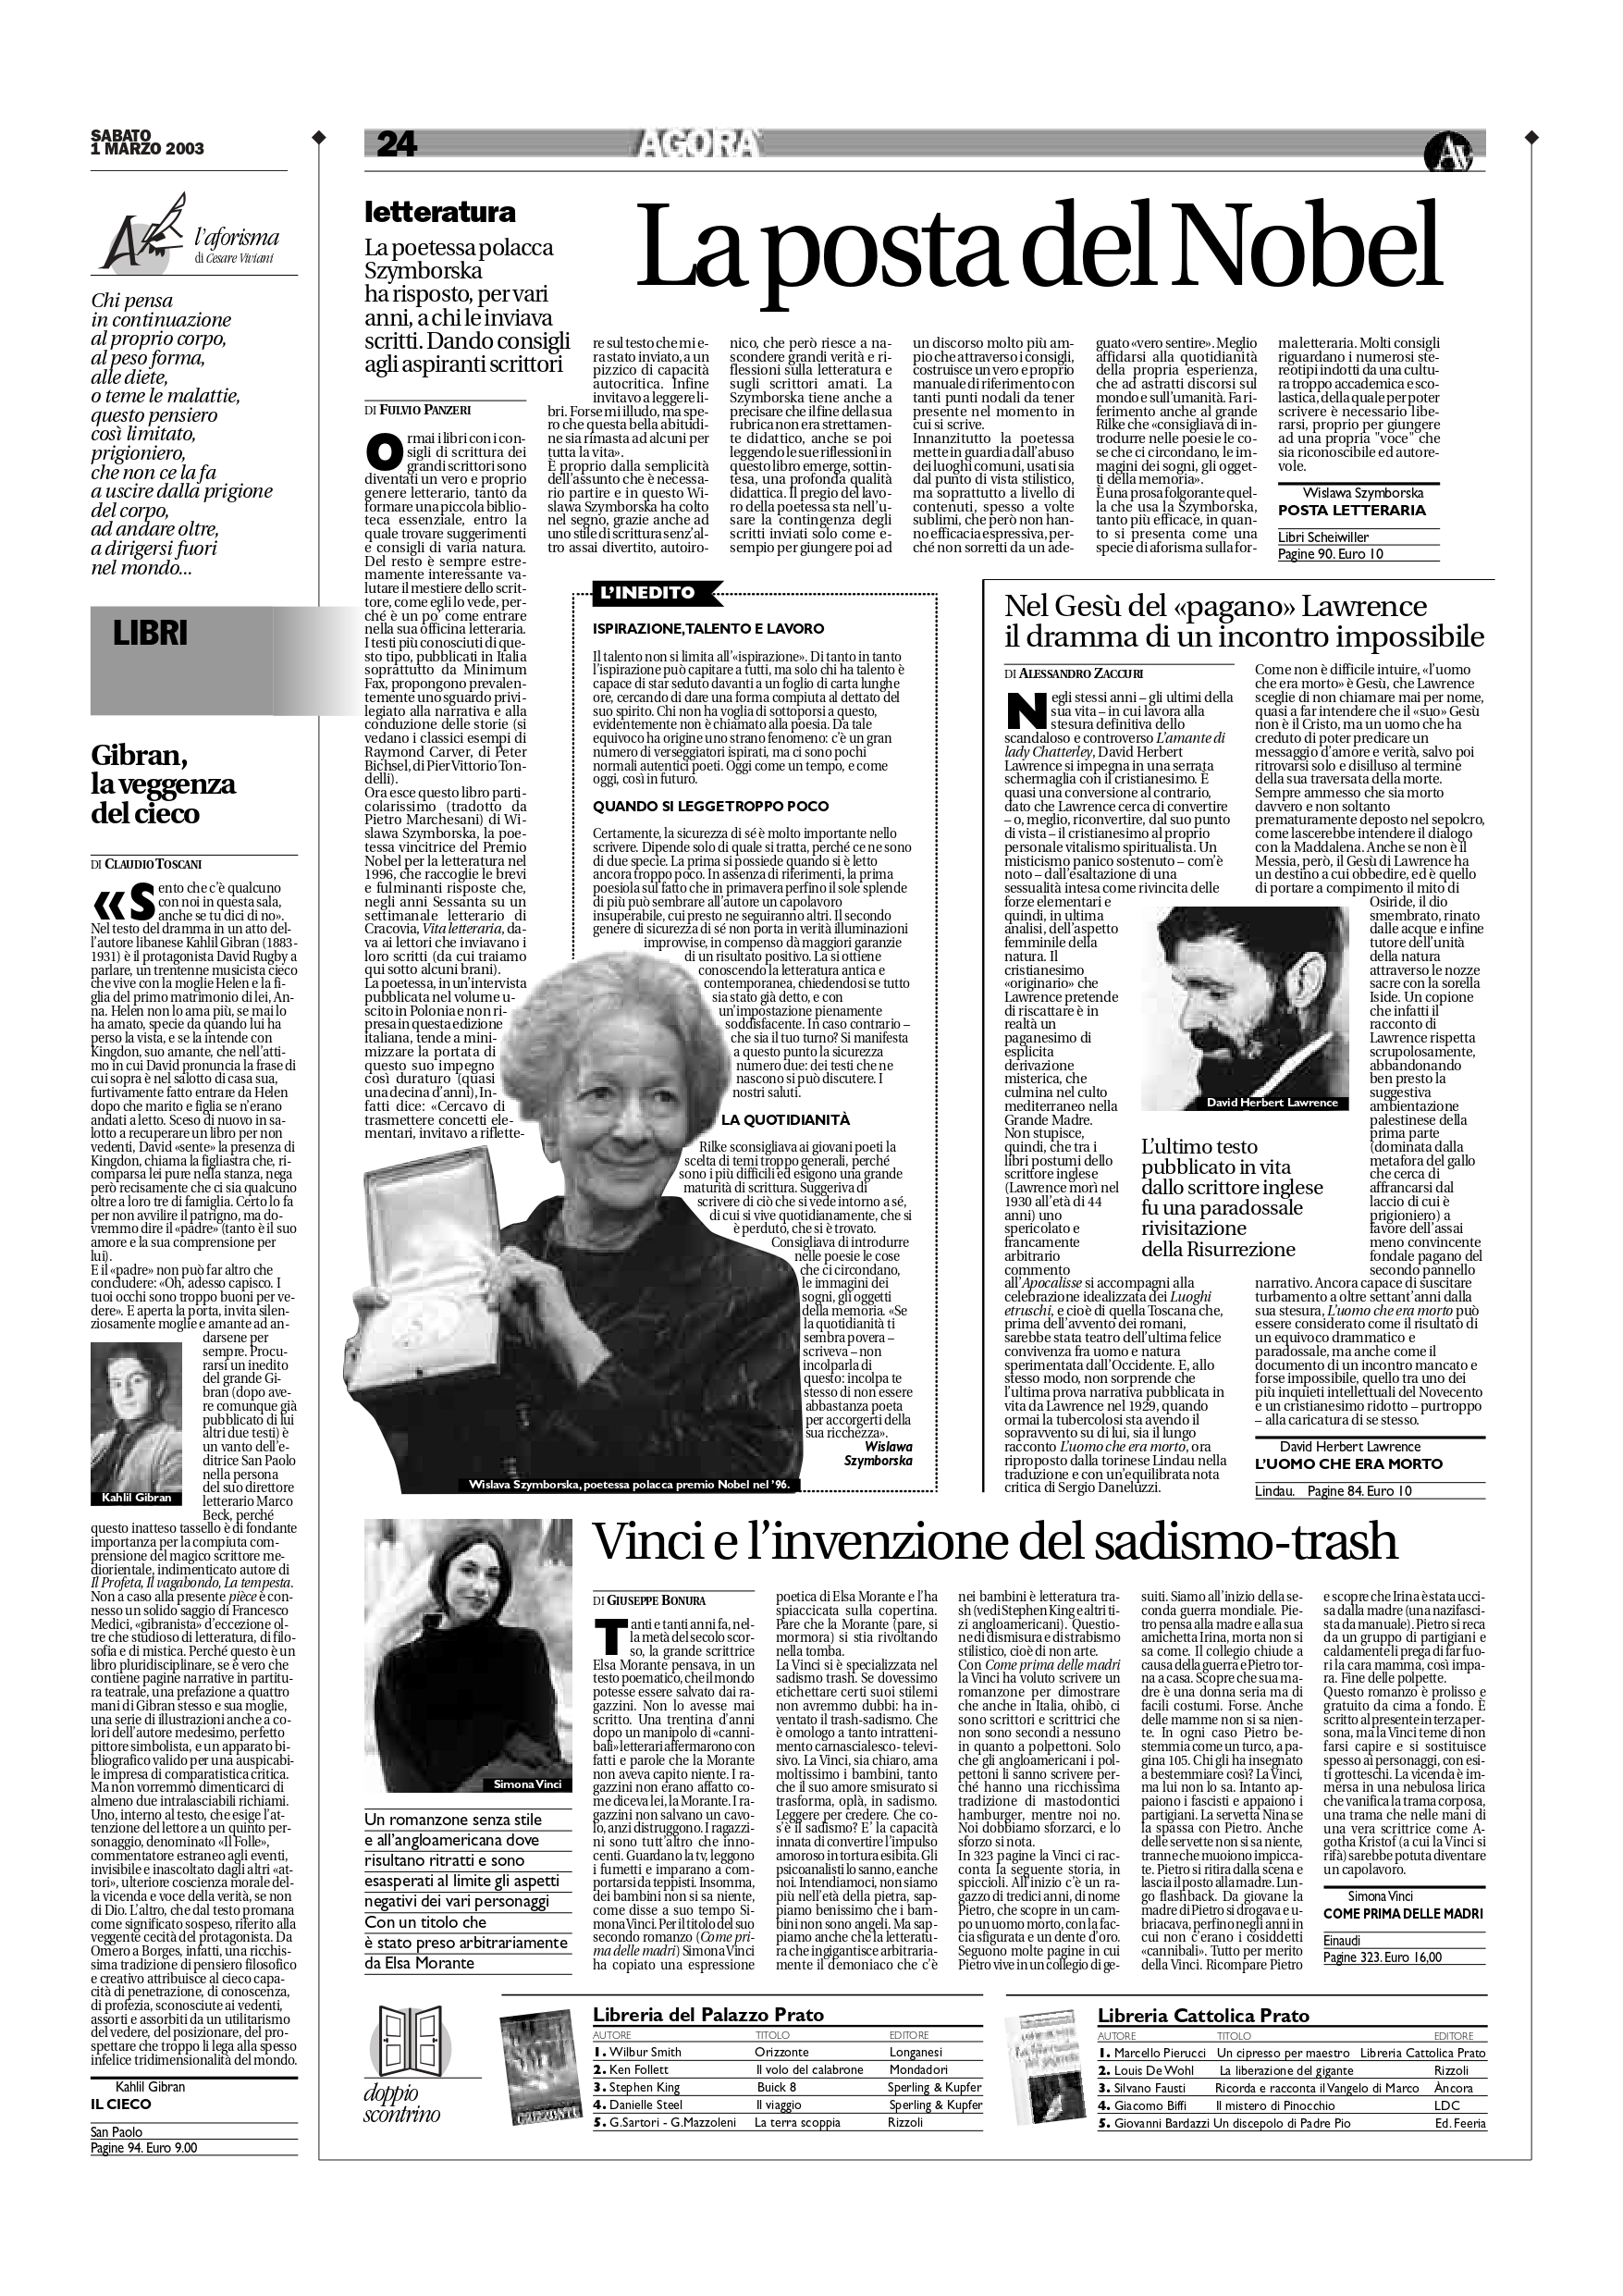 Claudio Toscani, "Gibran, la veggenza del cieco", Avvenire, Mar 1, 2003, p. 24 (review)